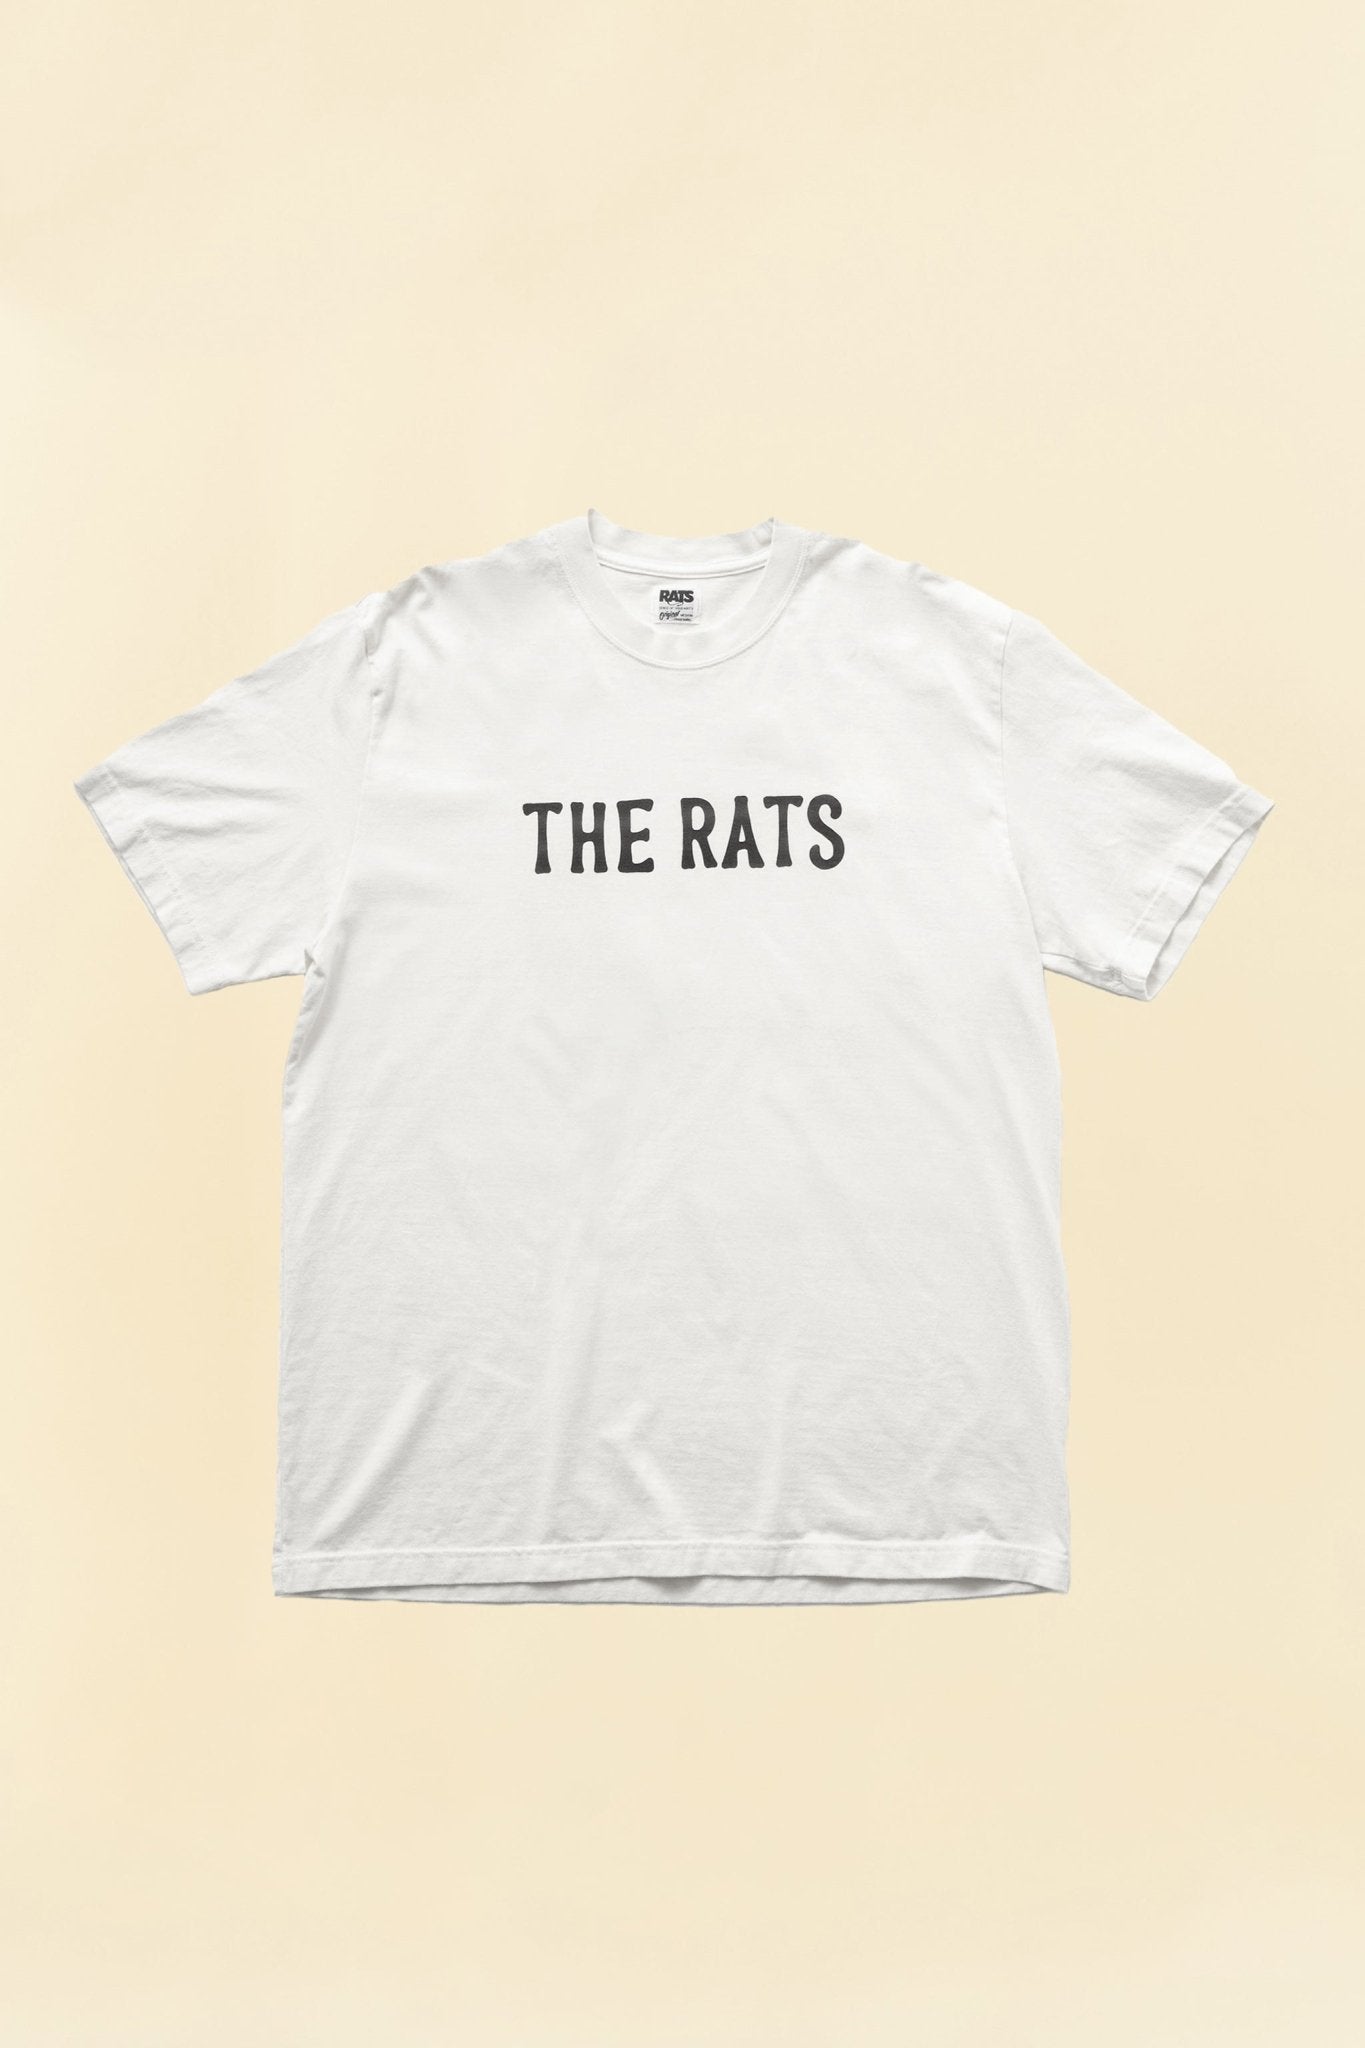 Rats "The Rats" Short Sleeve Tee - White -Rats - URAHARA